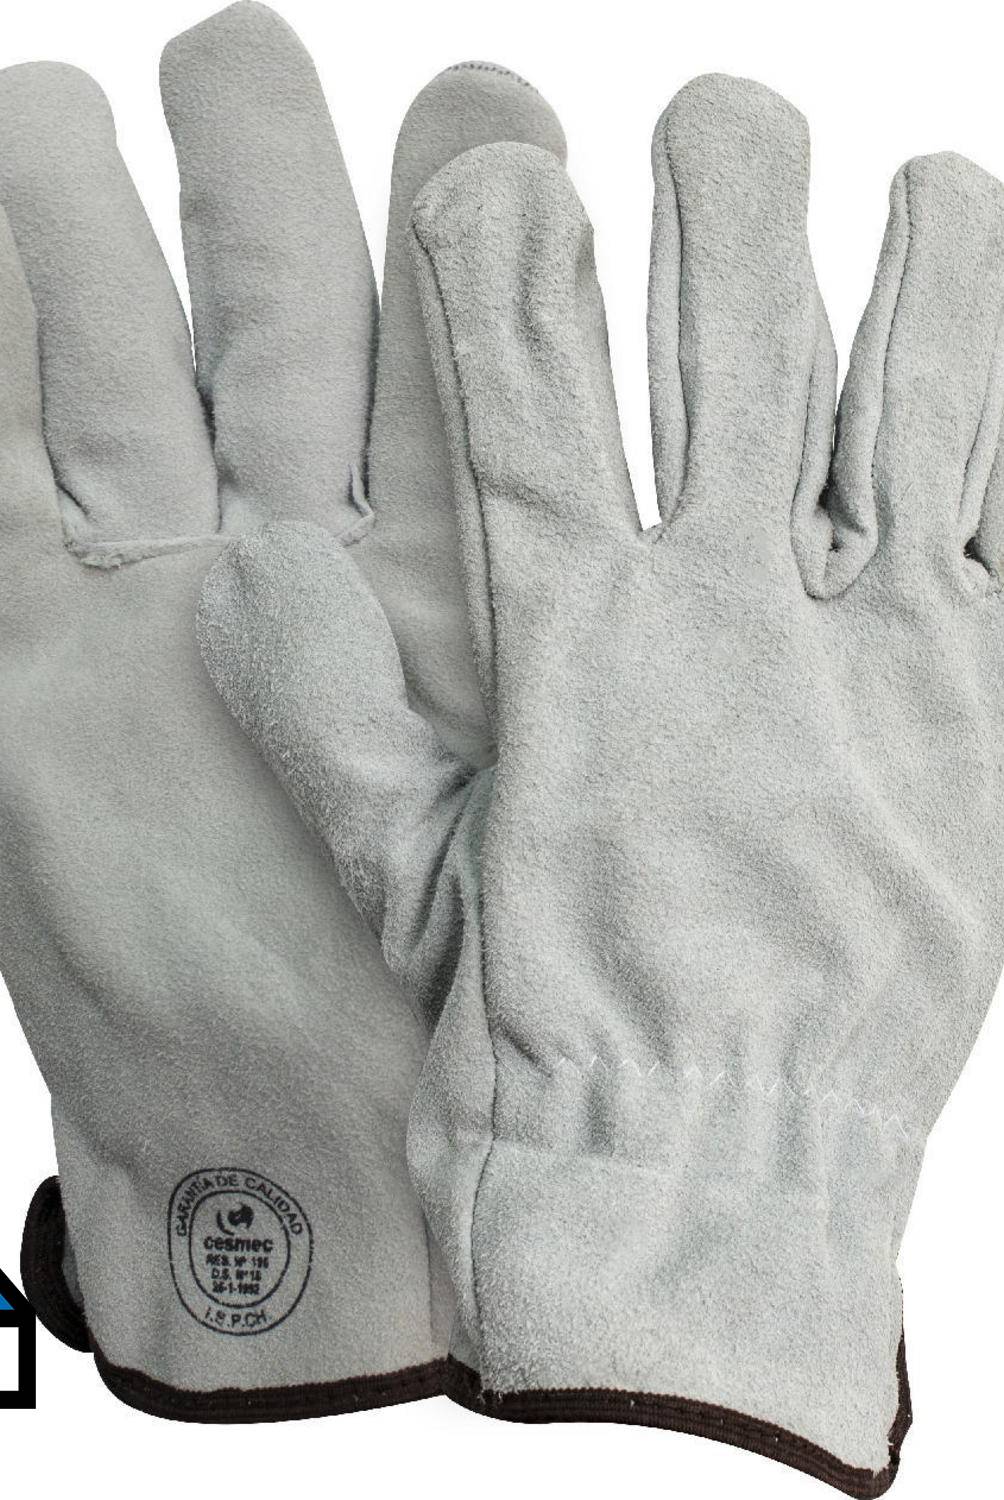 REDLINE - Pack 10 pares guantes descarne